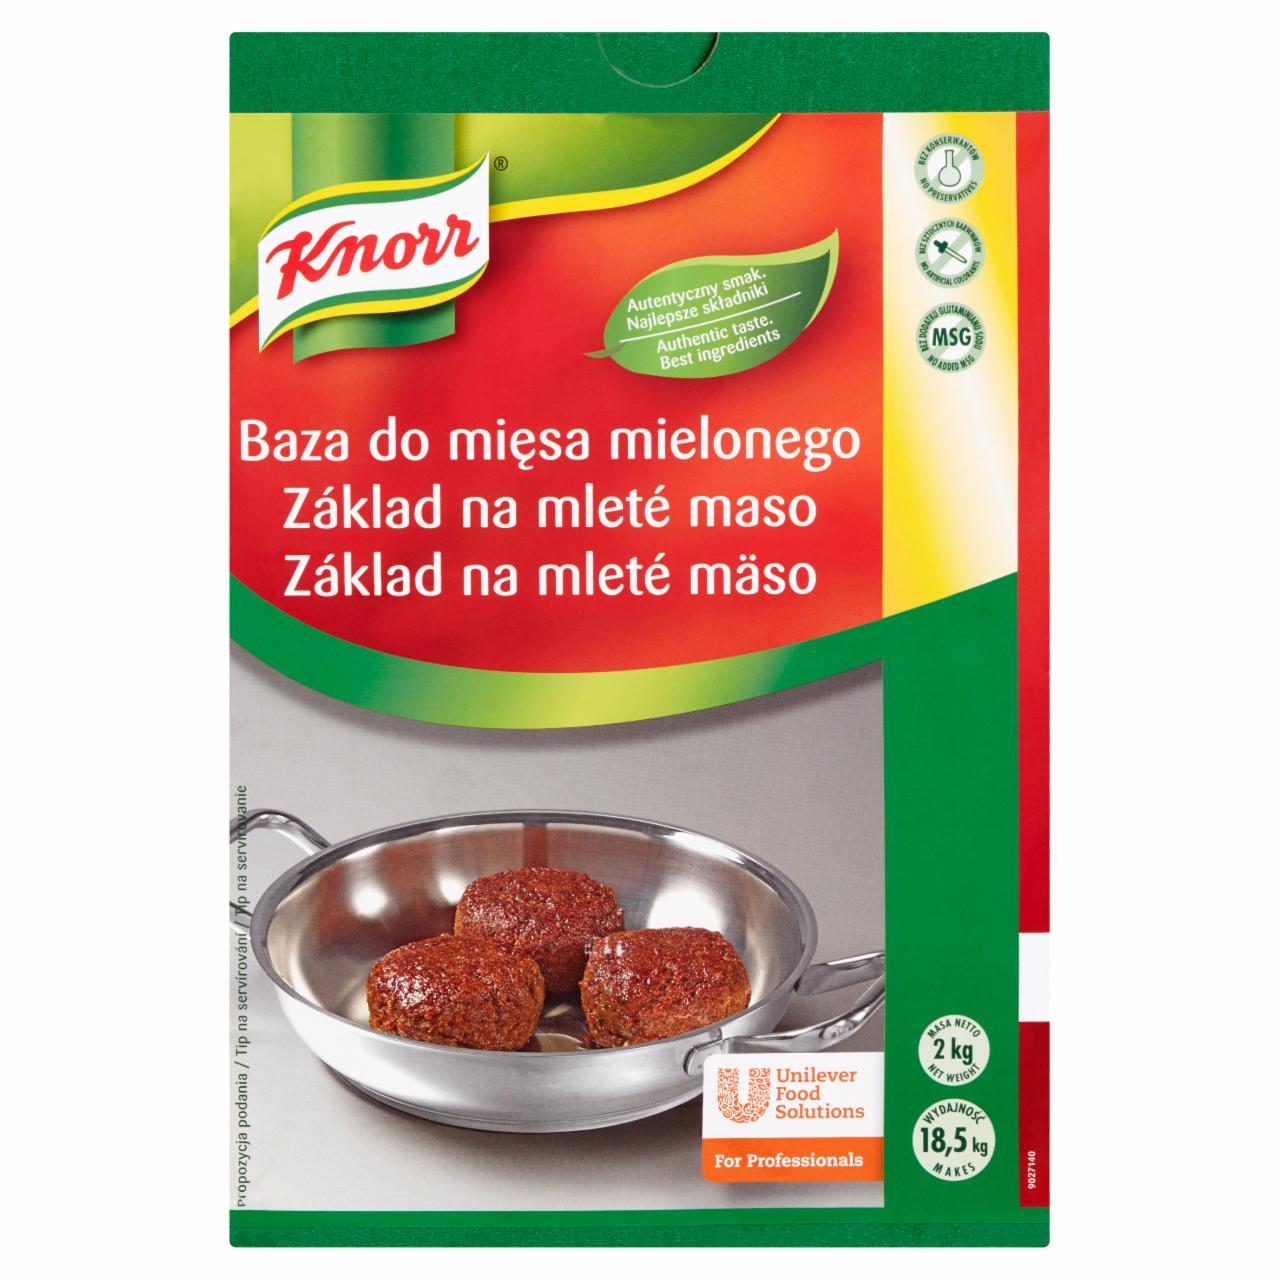 Zdjęcia - Knorr Baza do mięsa mielonego 2 kg